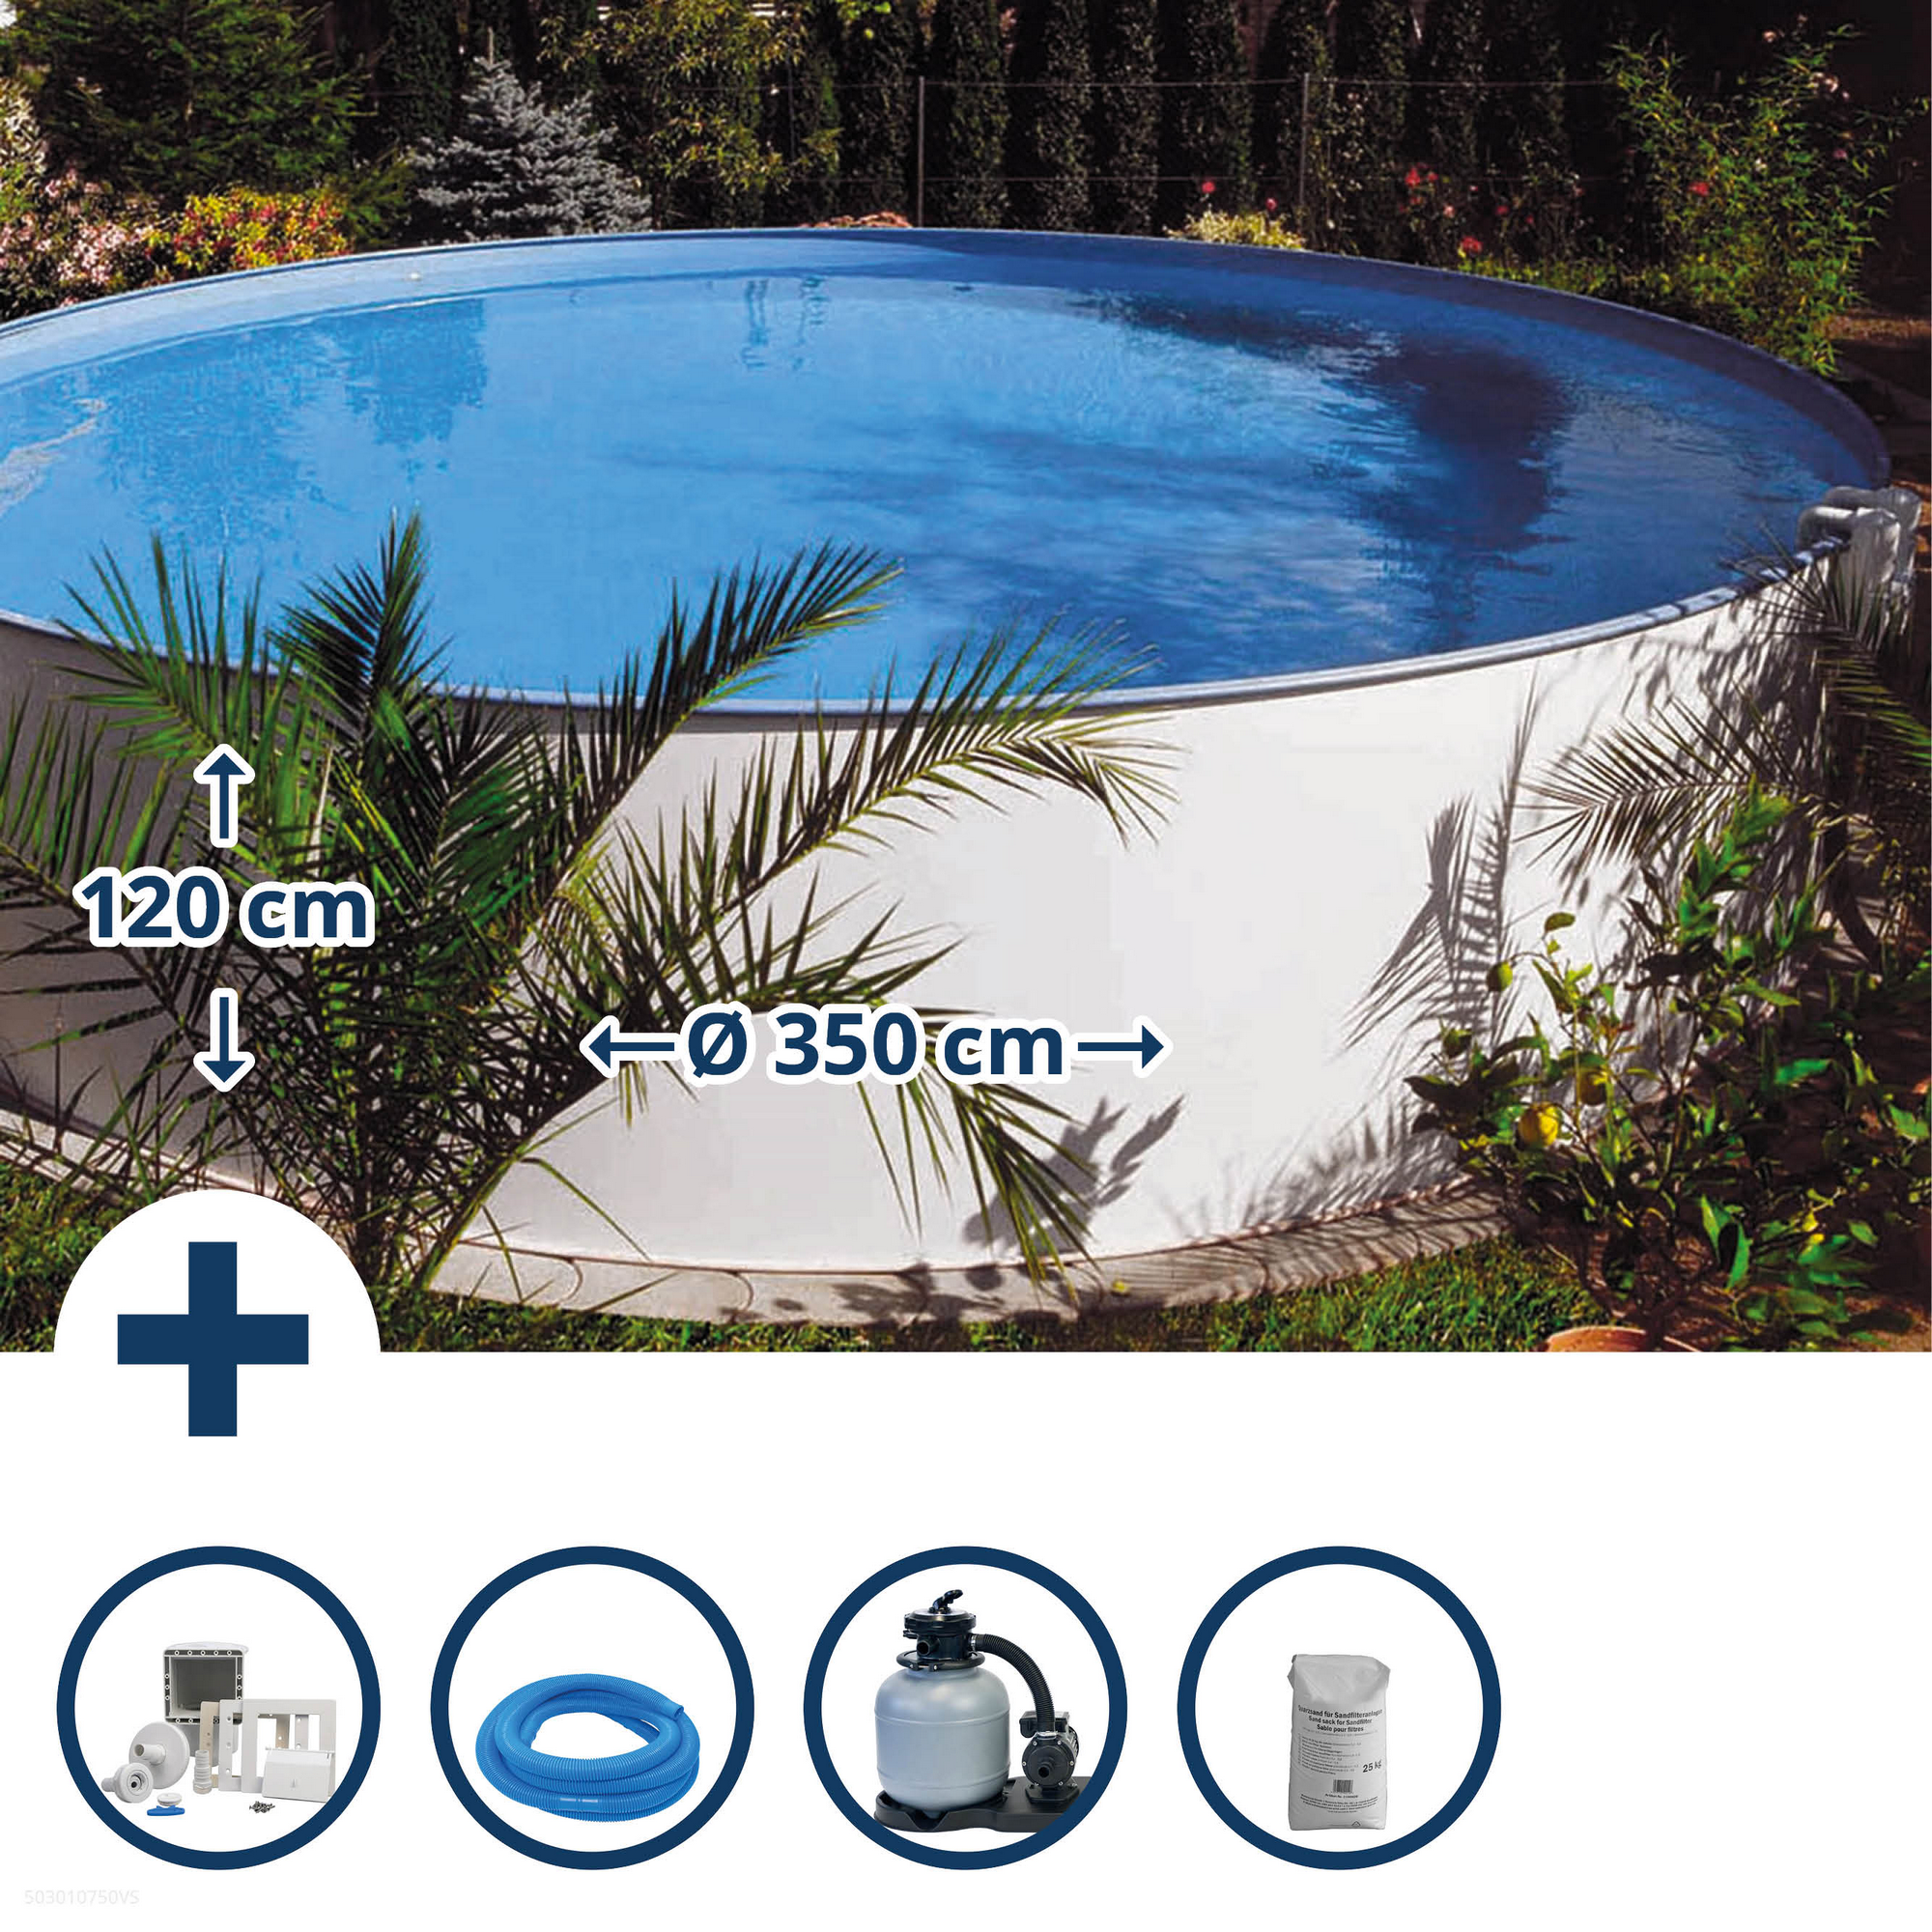 Aufstellpool-Set 'Exclusiv 3' weiß/blau Ø 350 x 120 cm + product picture